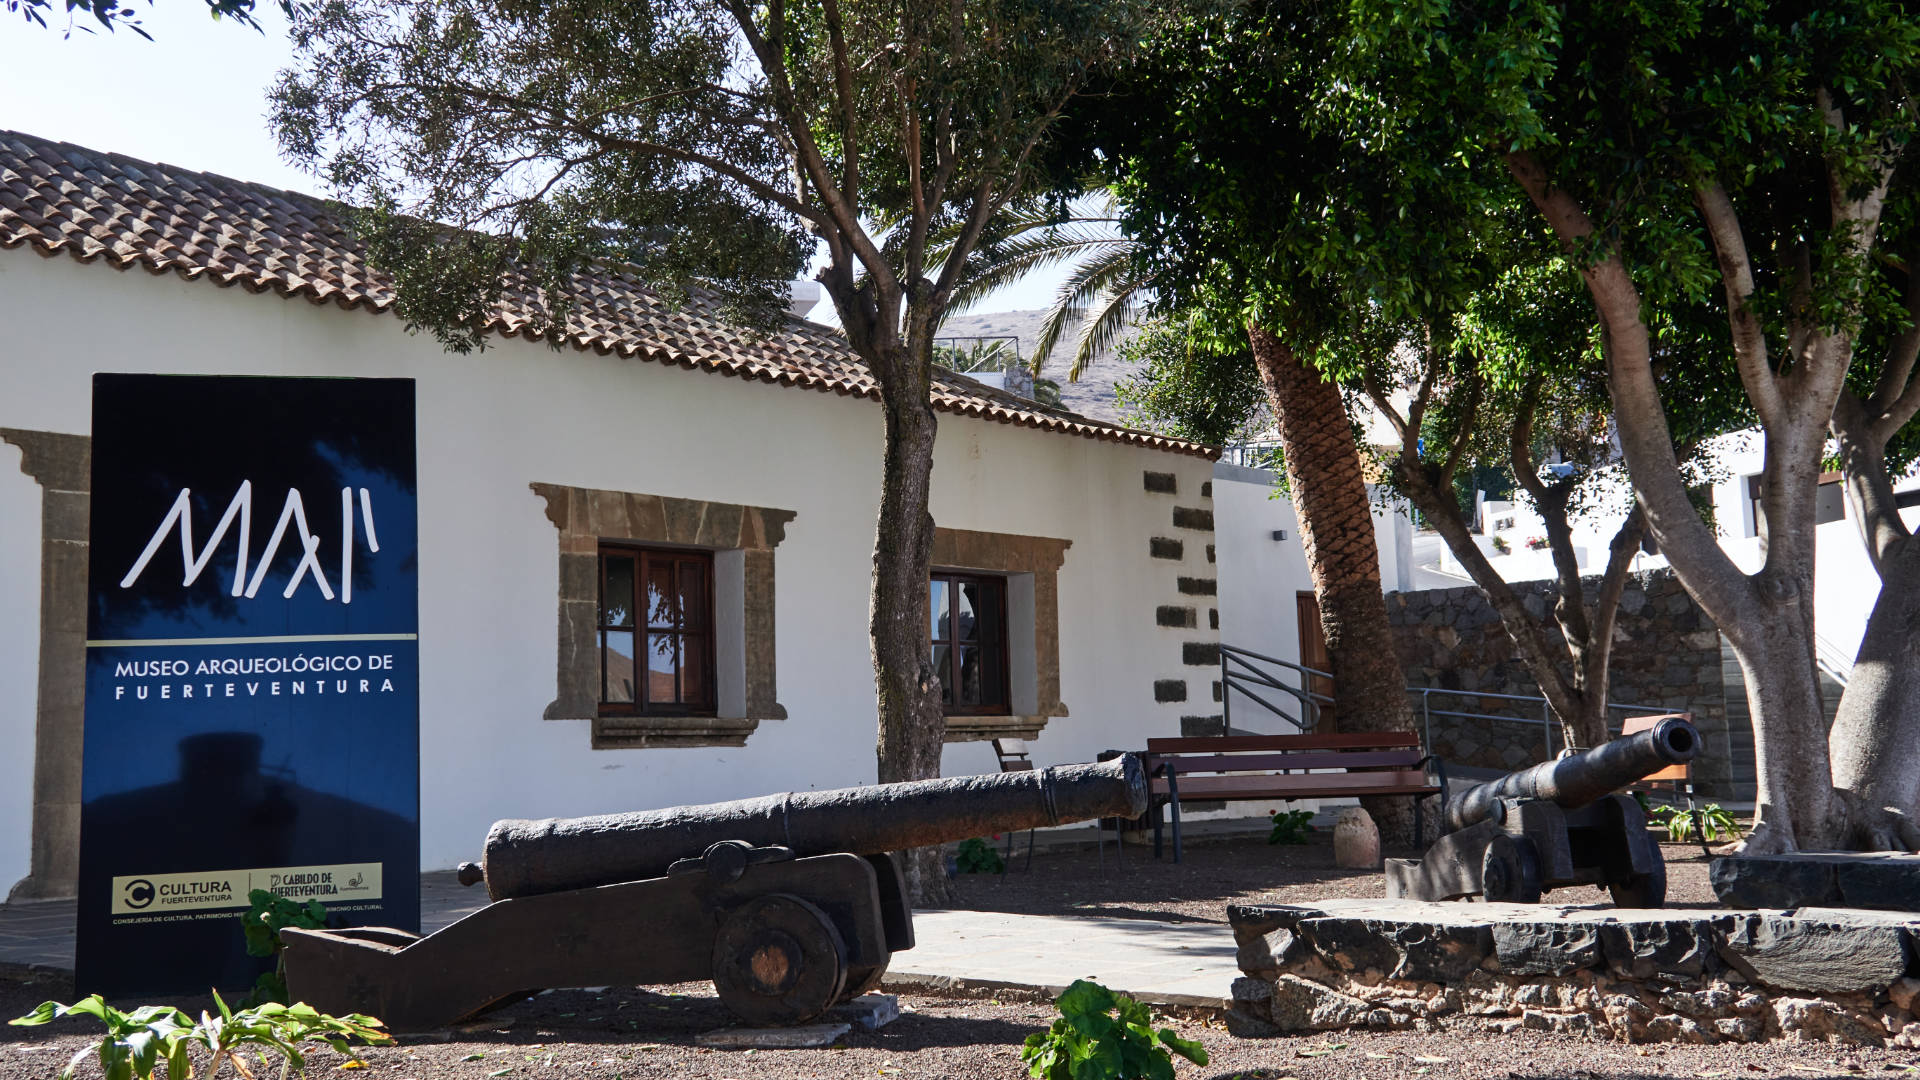 Museo Arqueológico Insular in Betancuria Fuerteventura.